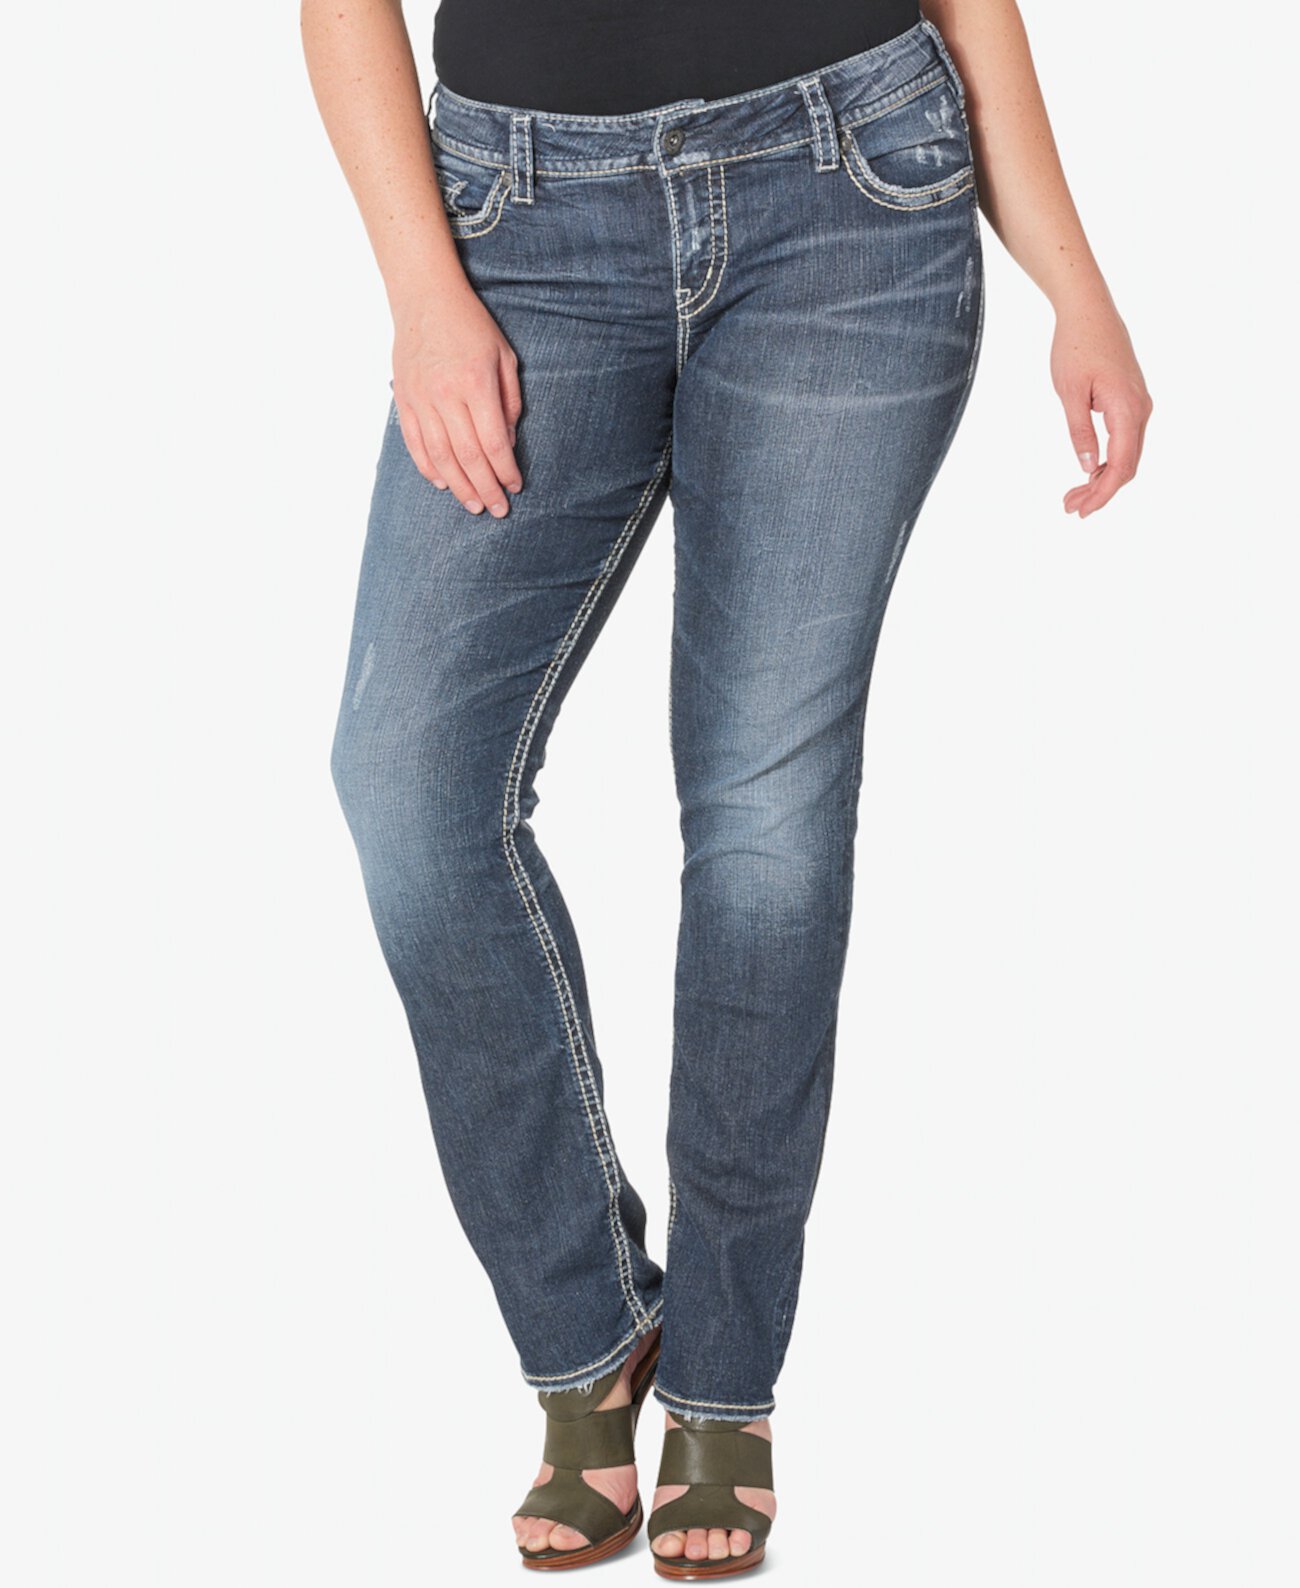 Прямые джинсы Suki среднего размера больших размеров с эффектом потертости Silver Jeans Co.